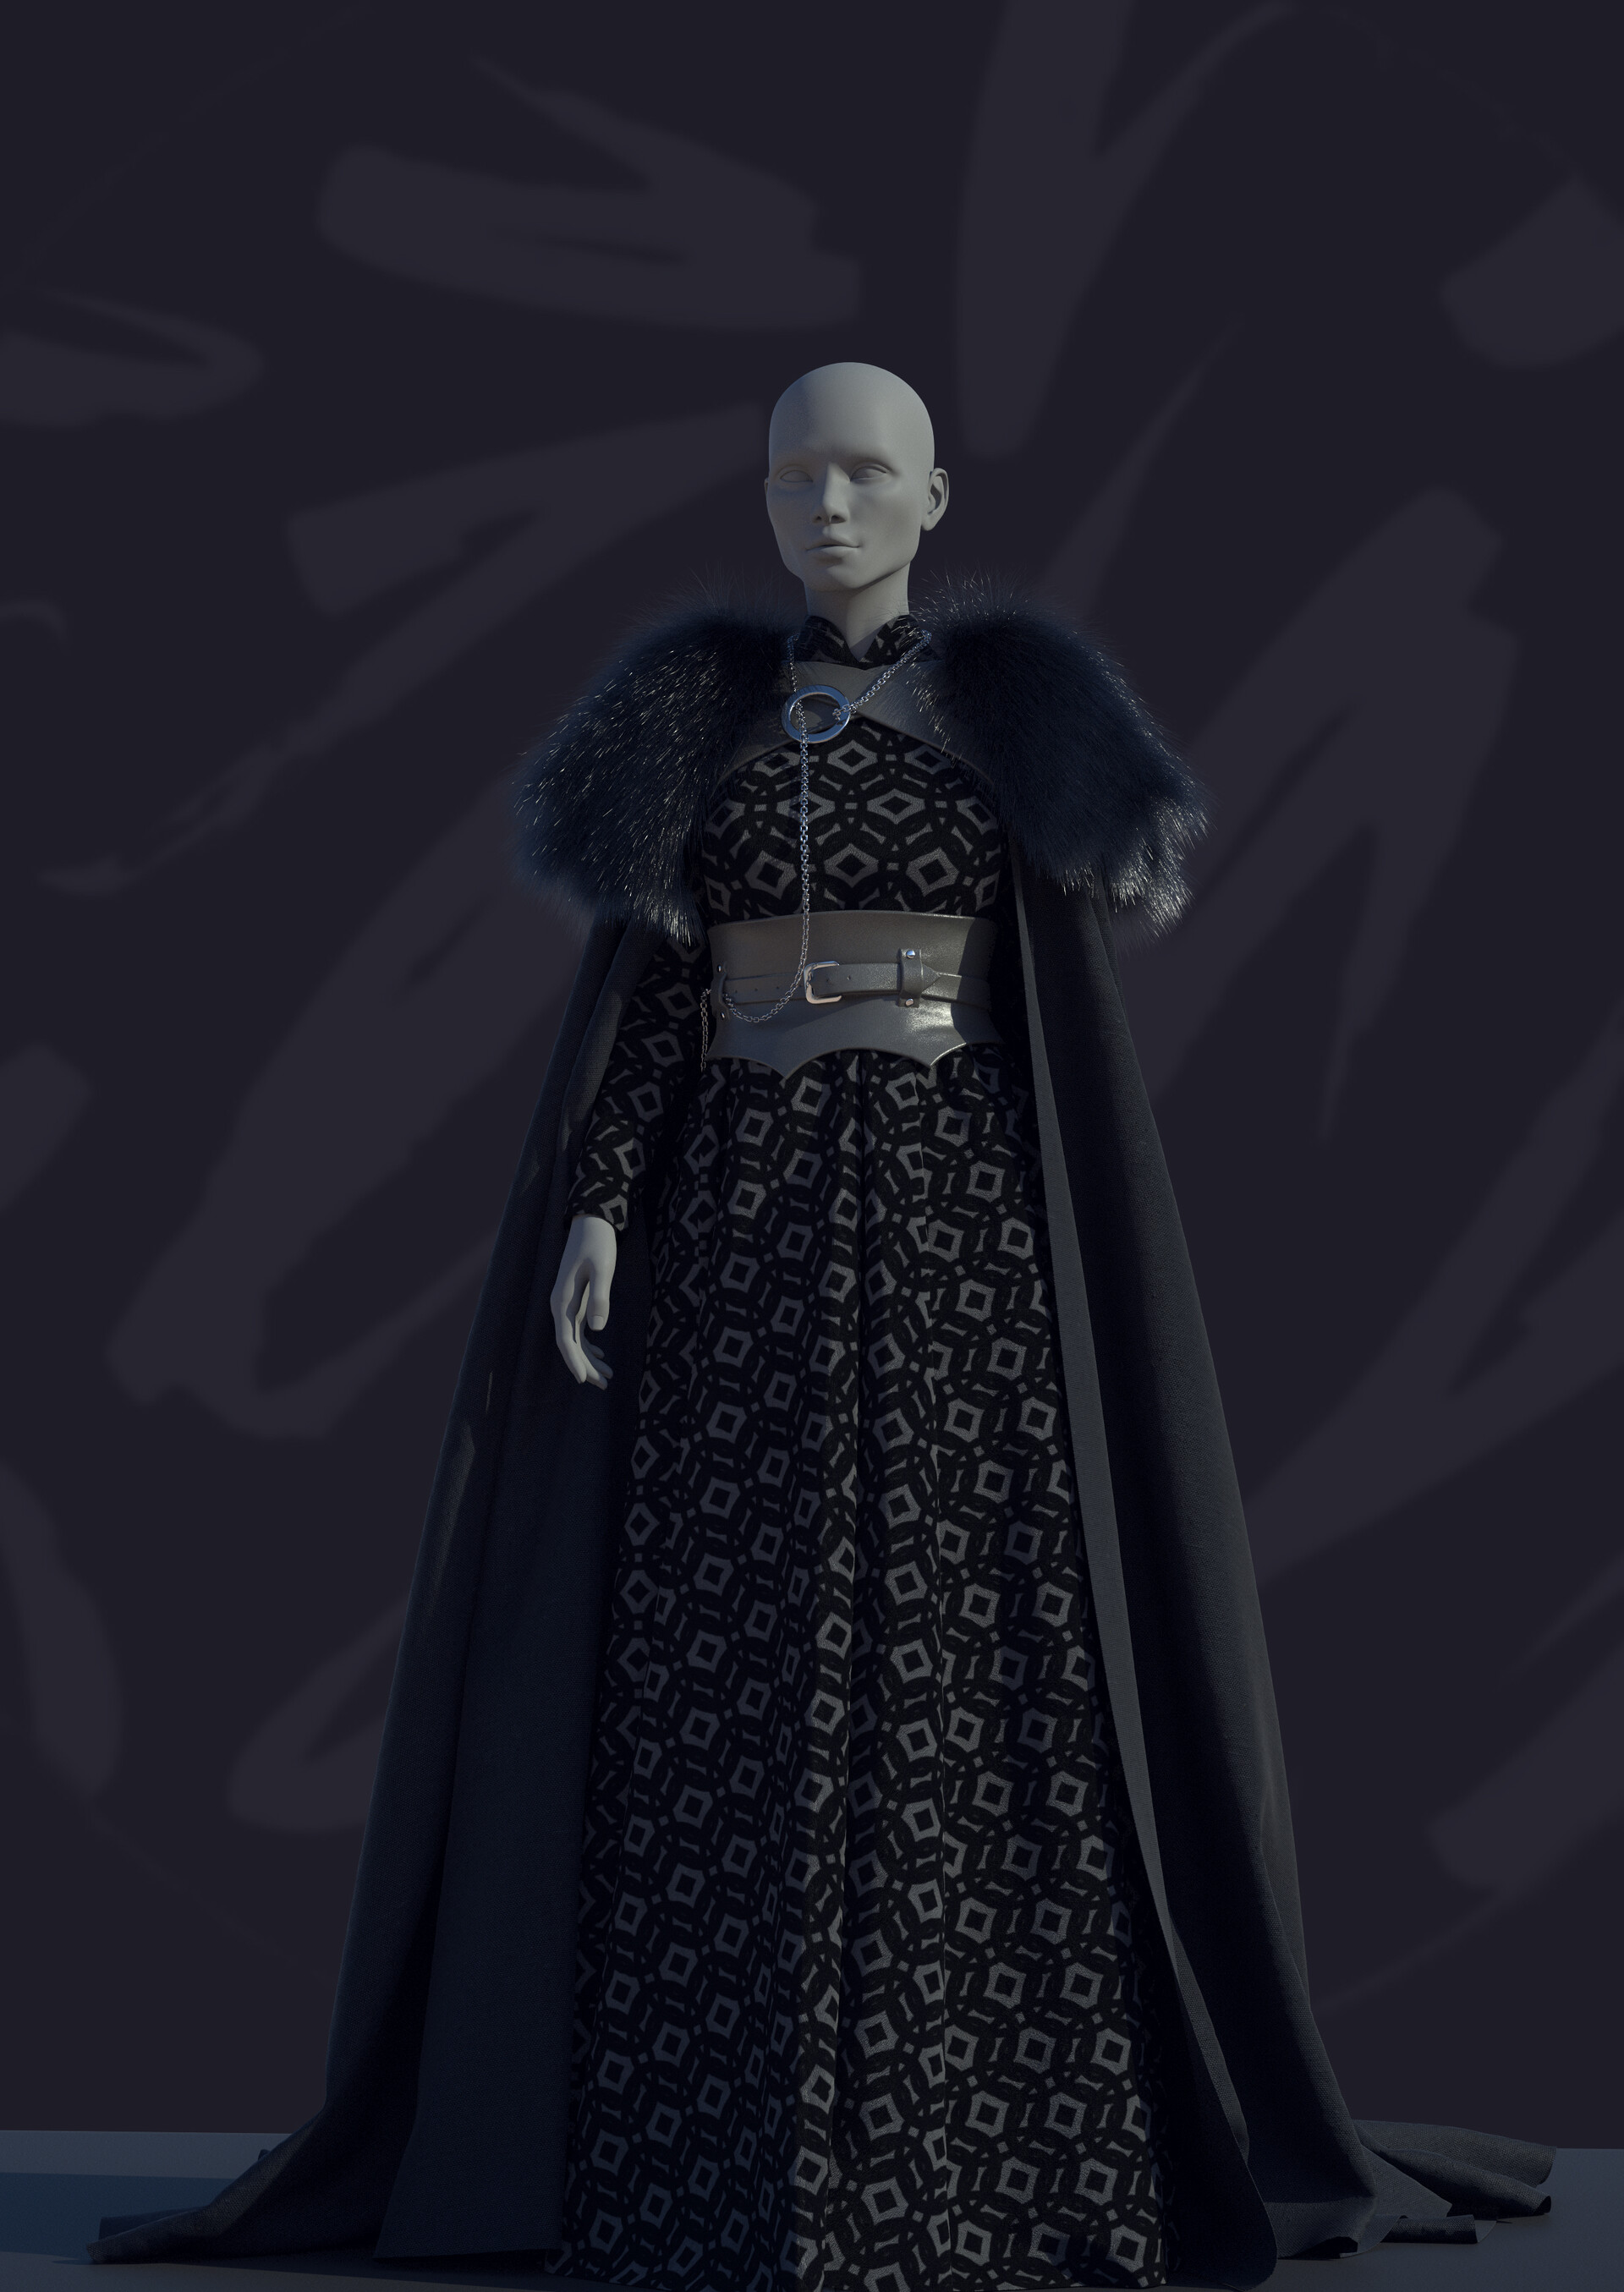 ArtStation - Sansa Stark's outfit